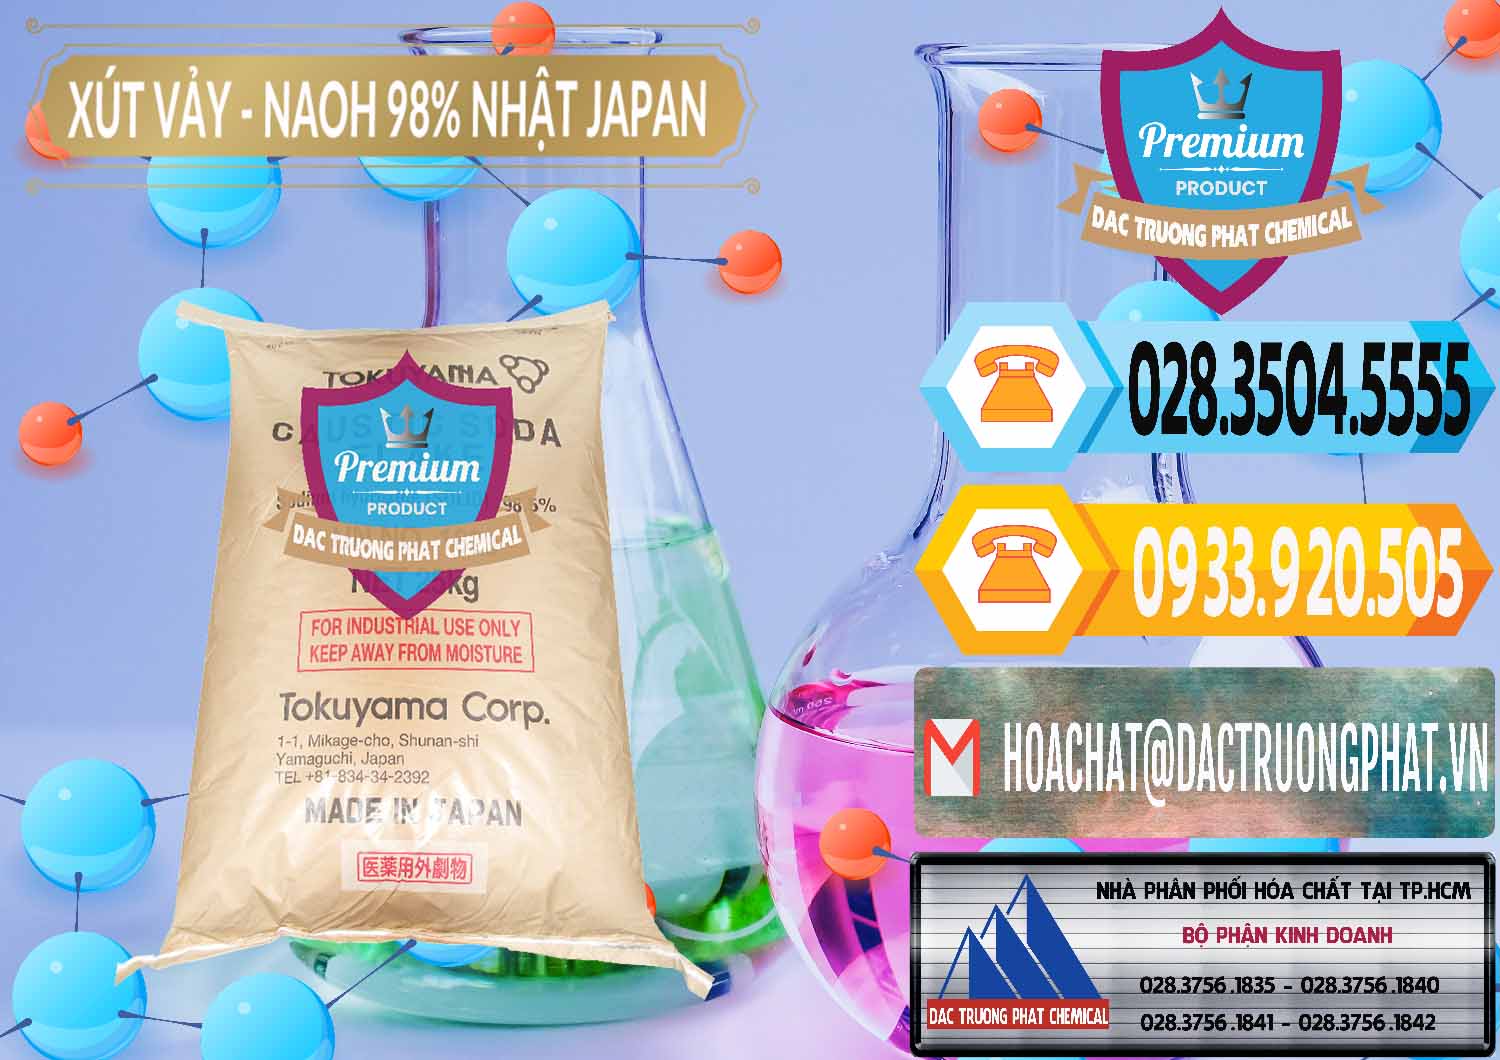 Cty chuyên phân phối và bán Xút Vảy - NaOH Vảy 98% Tokuyama Nhật Bản Japan - 0173 - Cty bán và phân phối hóa chất tại TP.HCM - hoachattayrua.net